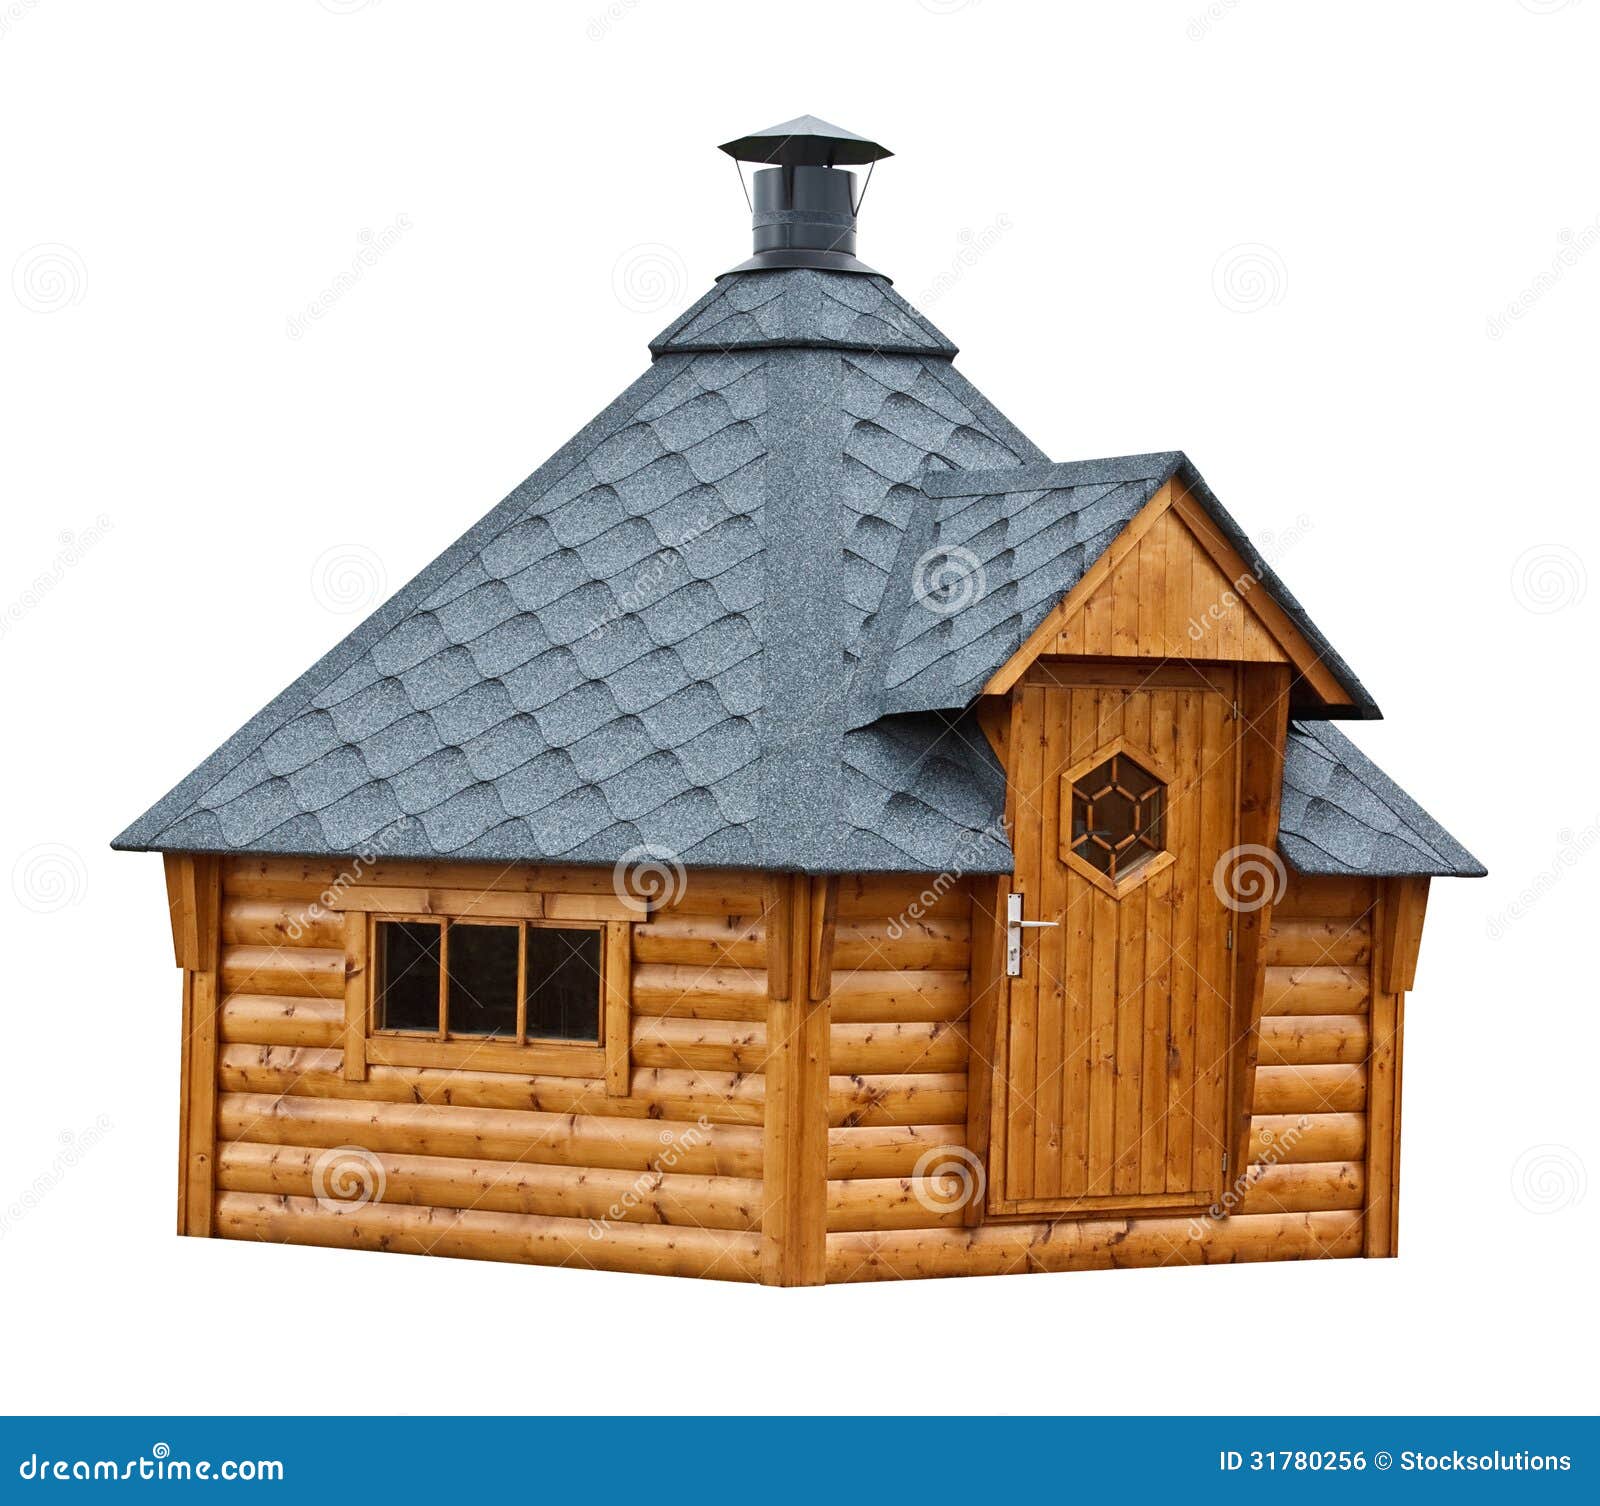 Timber Garden Sauna Building Royalty Free Stock Image 